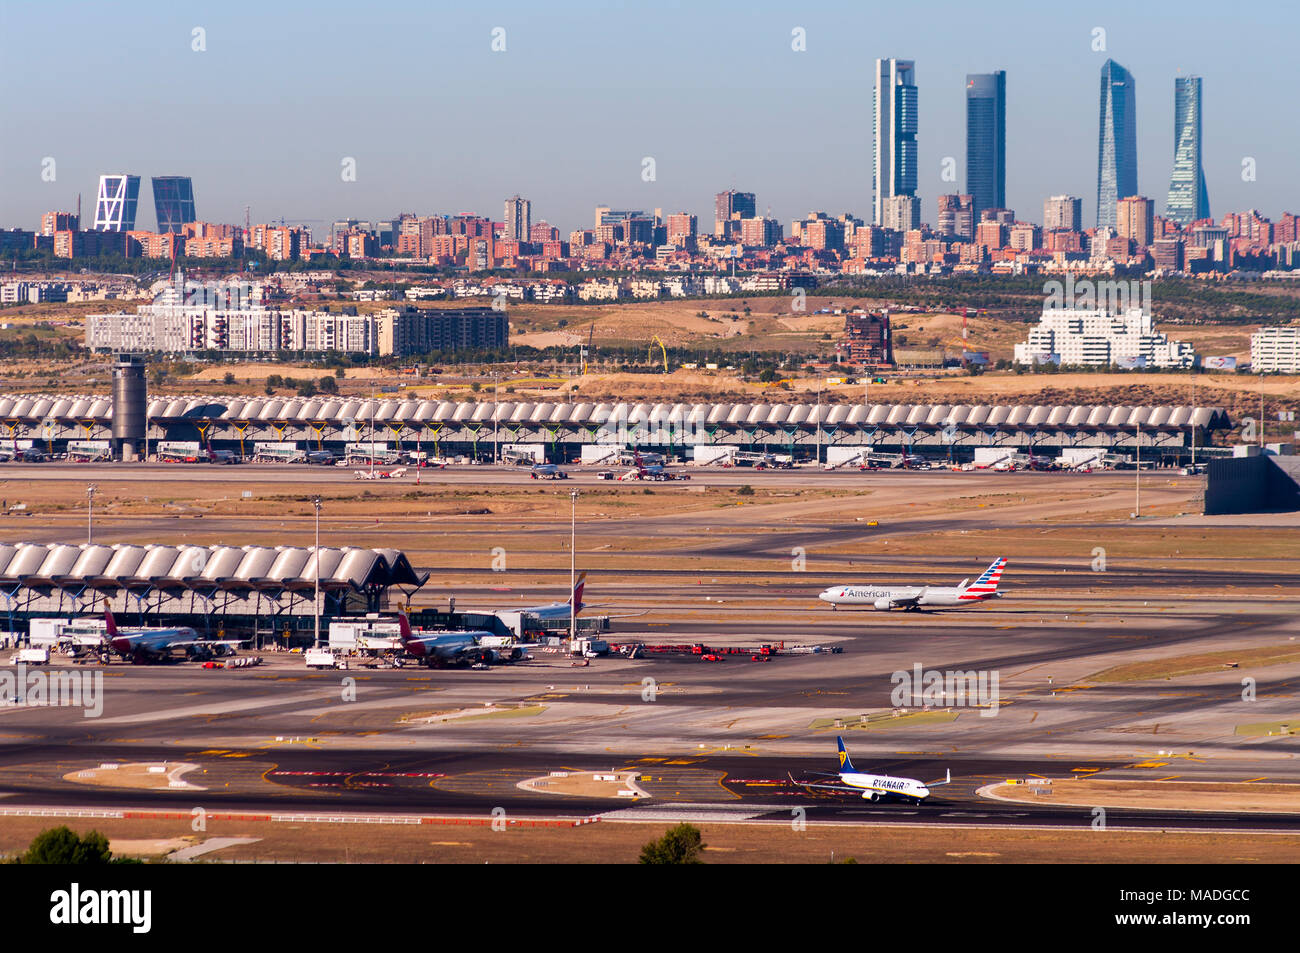 Aeropuerto de Barajas y skyline. Madrid. España Stock Photo